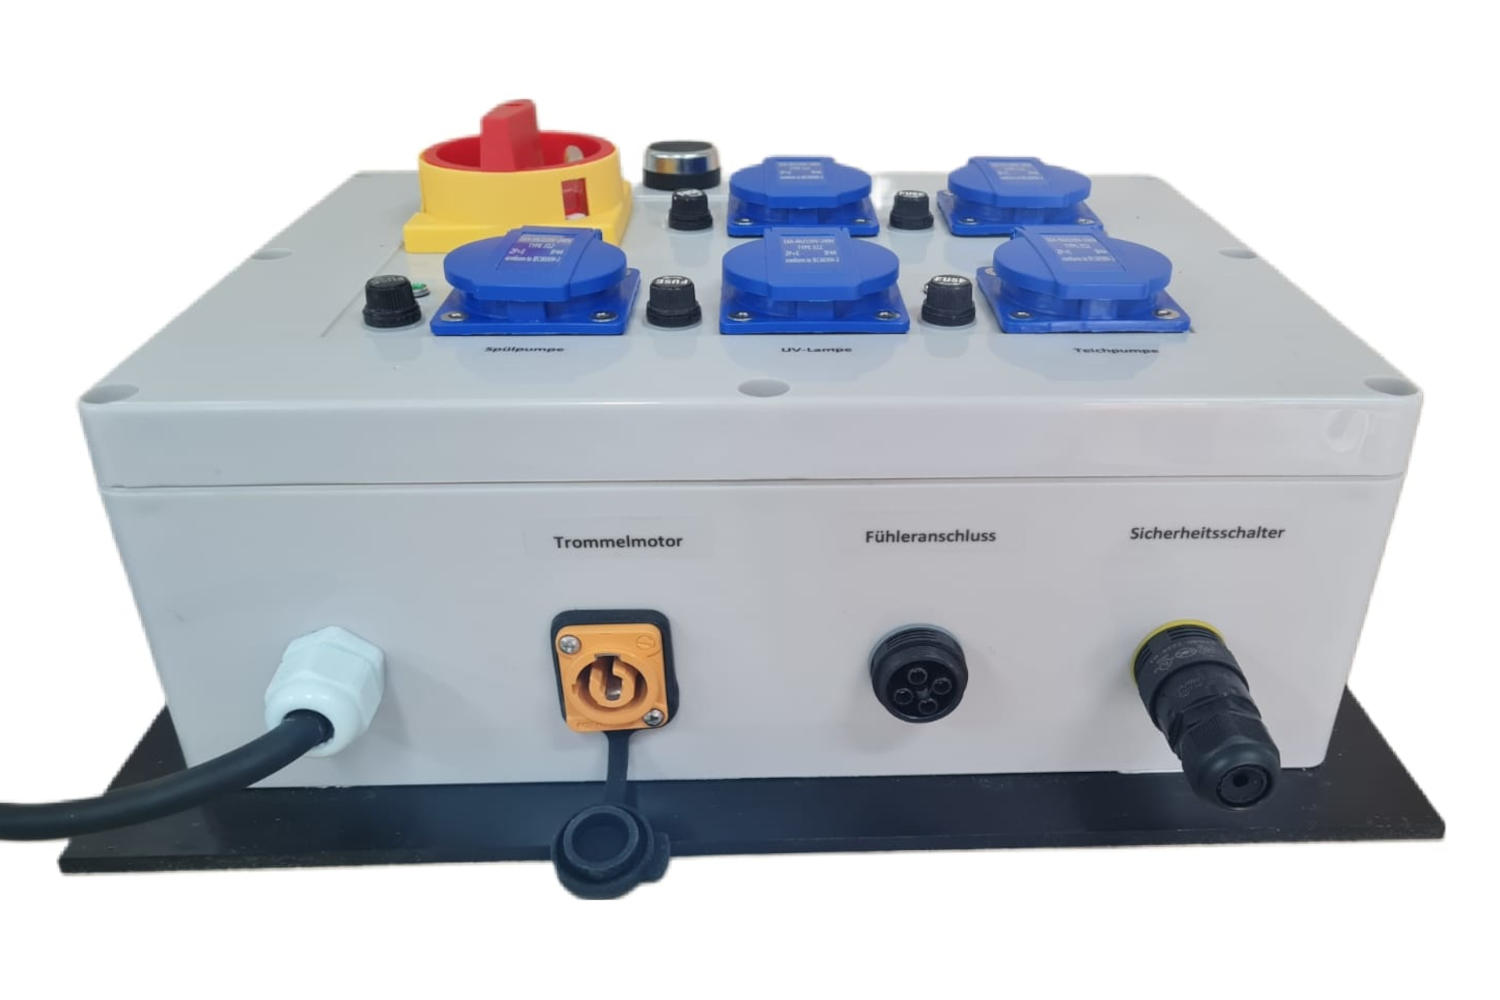 EPS Combi-Trommelfilter CF35 + integrierte Biokammer + integrierte Pumpenkammer + Rinnenspülung + Steuerung + Spülpumpe + UV-Schutz + Edelstahlsieb in Sandwichbauweise